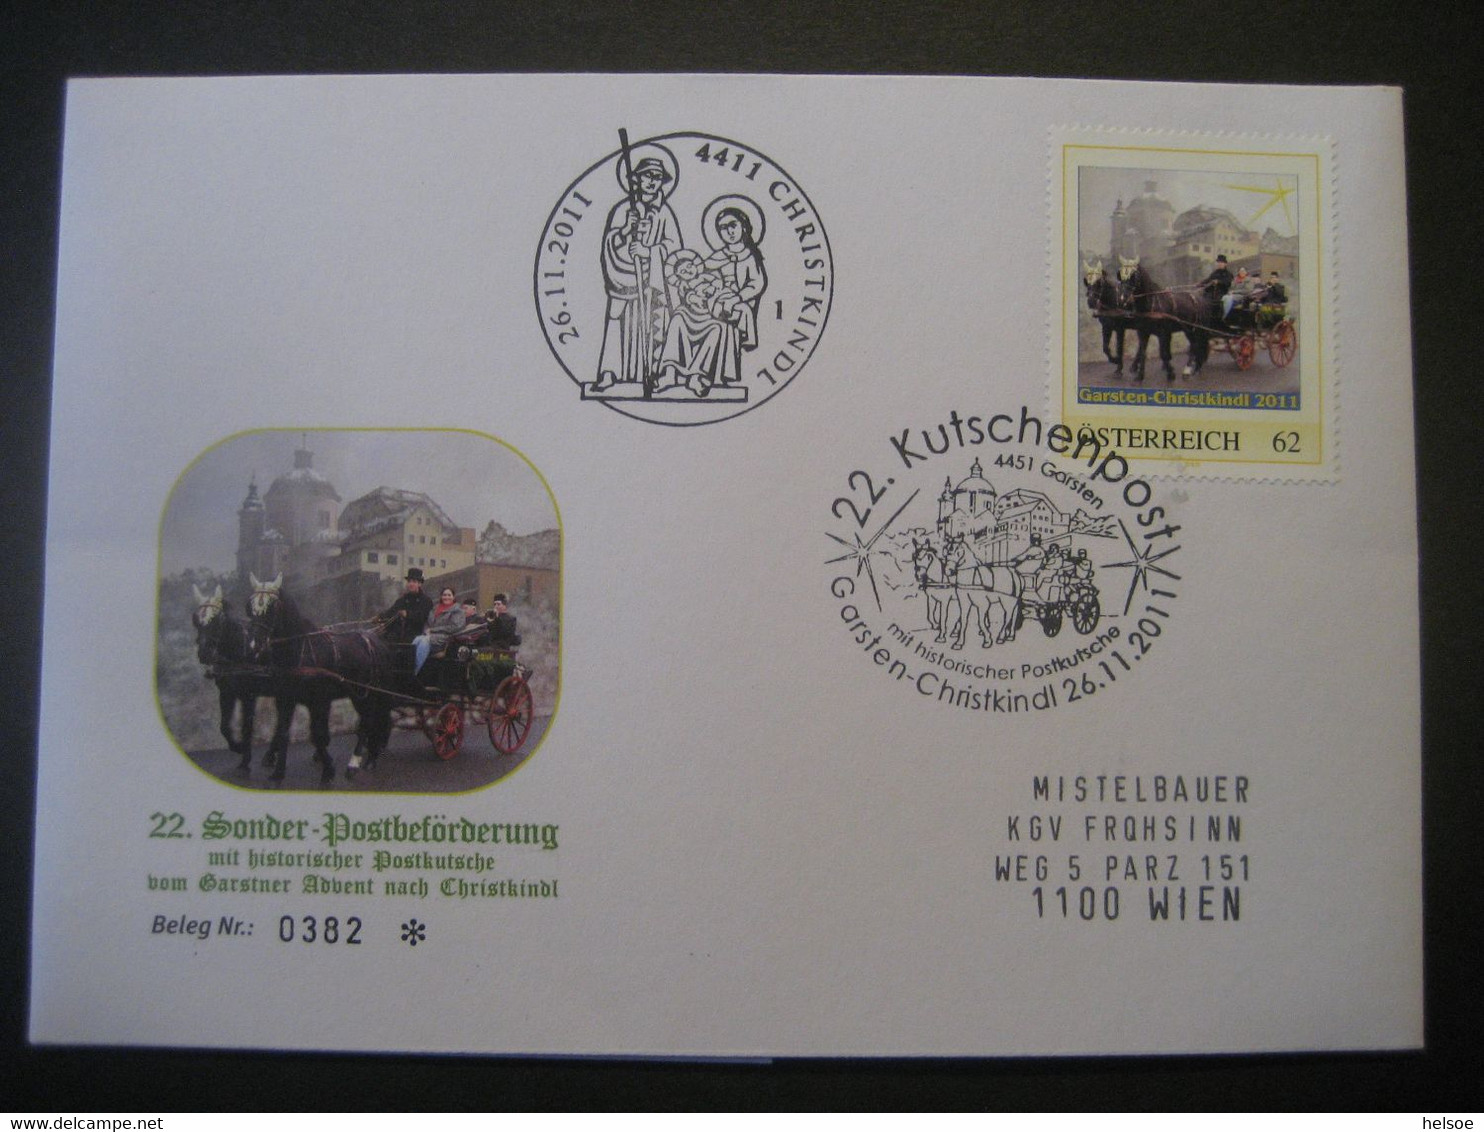 Osterreich- Garsten 26.11.2011 Von Der 22. Sonderpostbeförderung Mit Postkutsche Garsten - Christkindl - Storia Postale